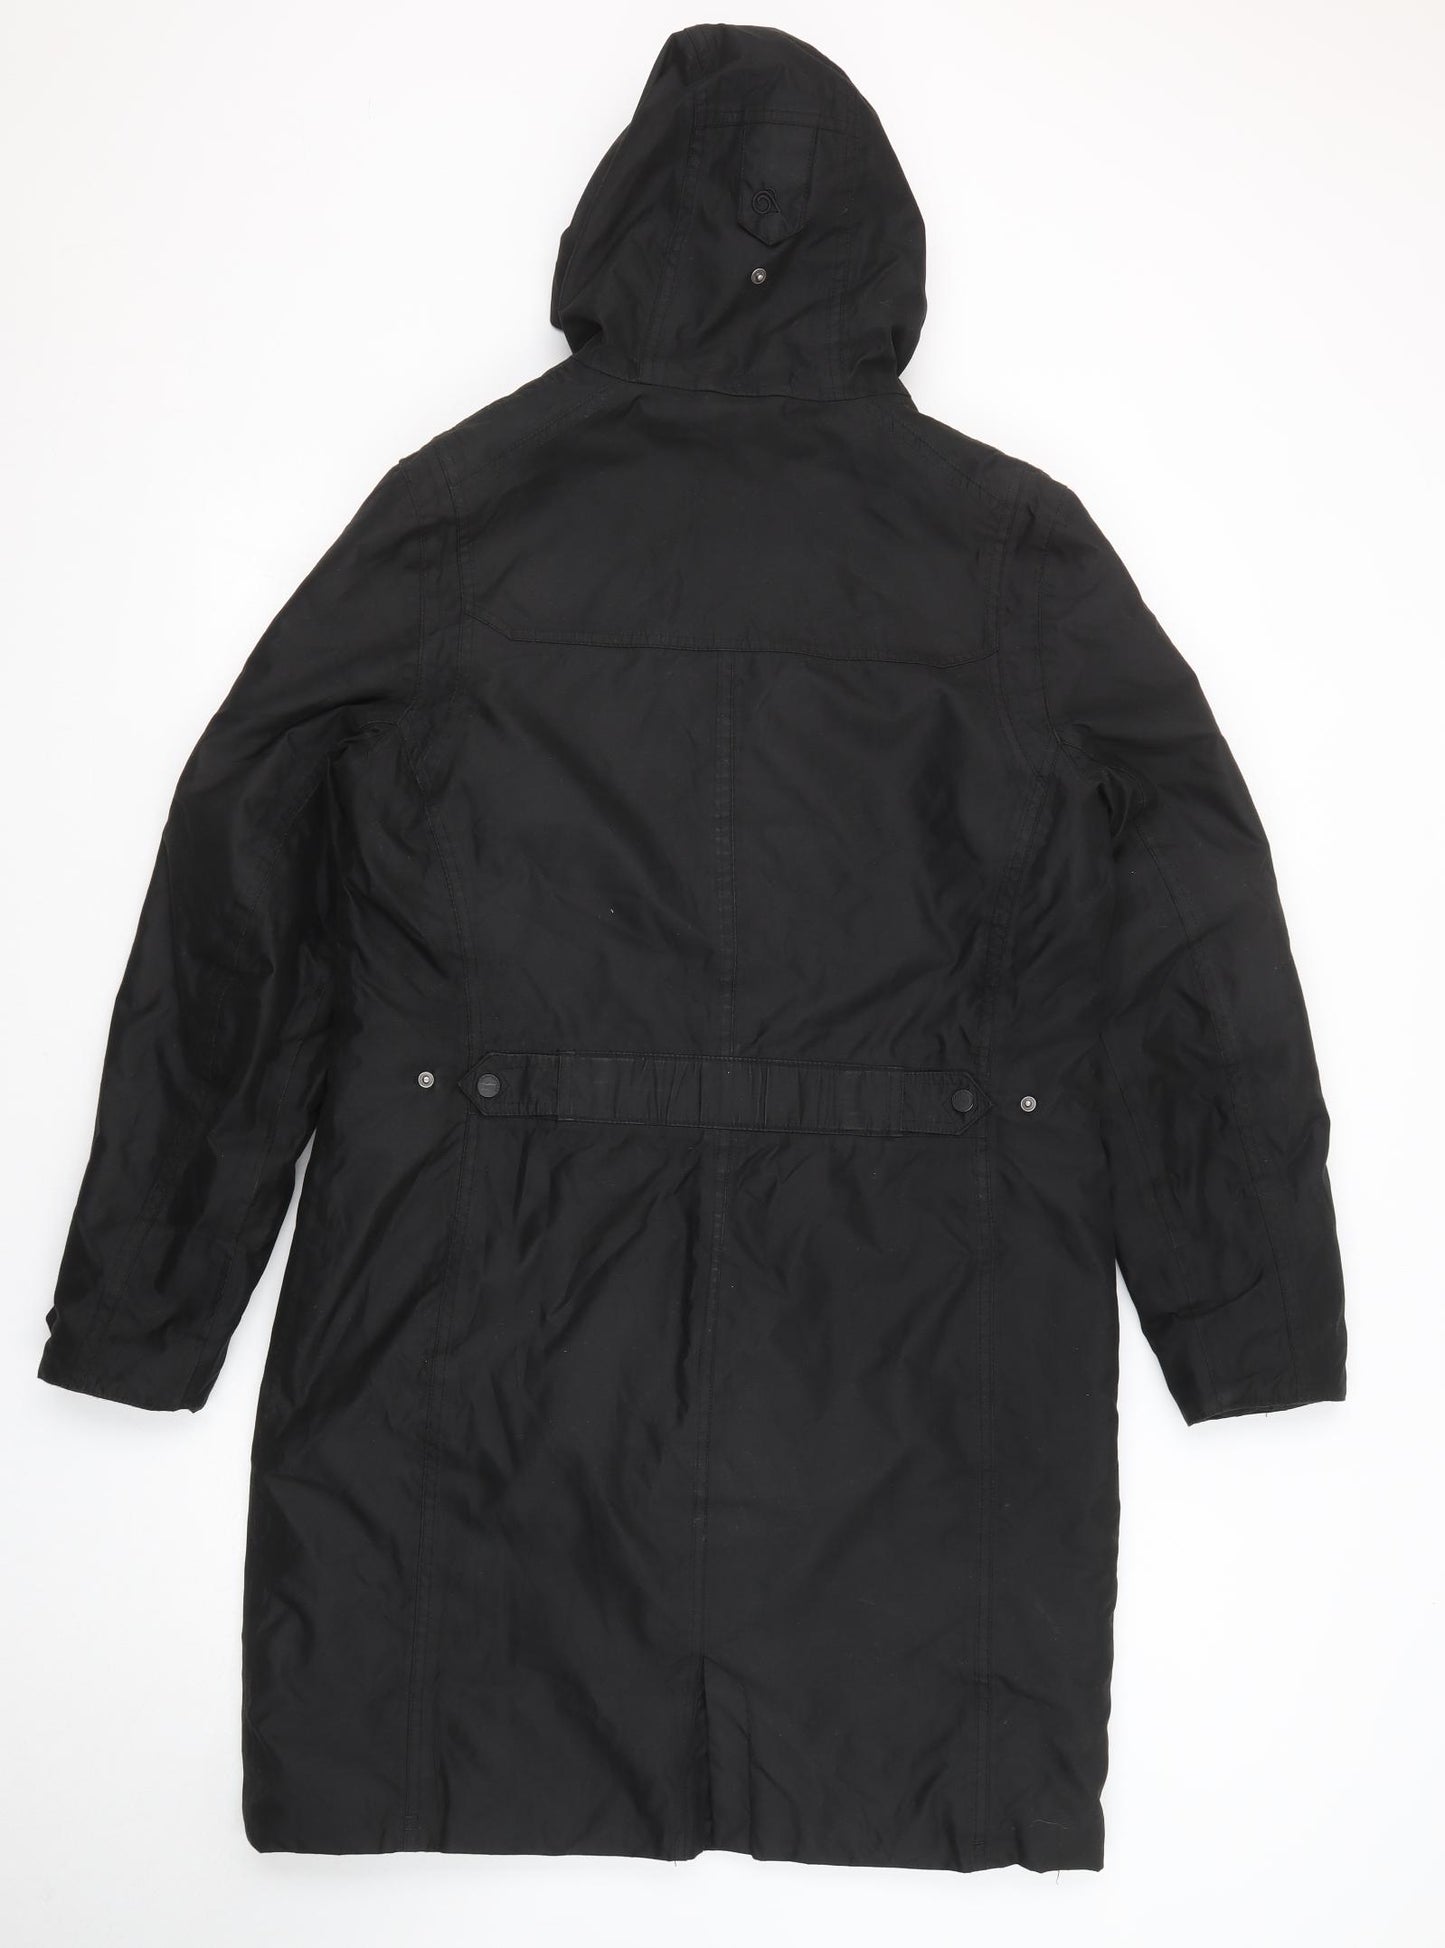 Craghoppers Womens Black Rain Coat Coat Size 12 Zip